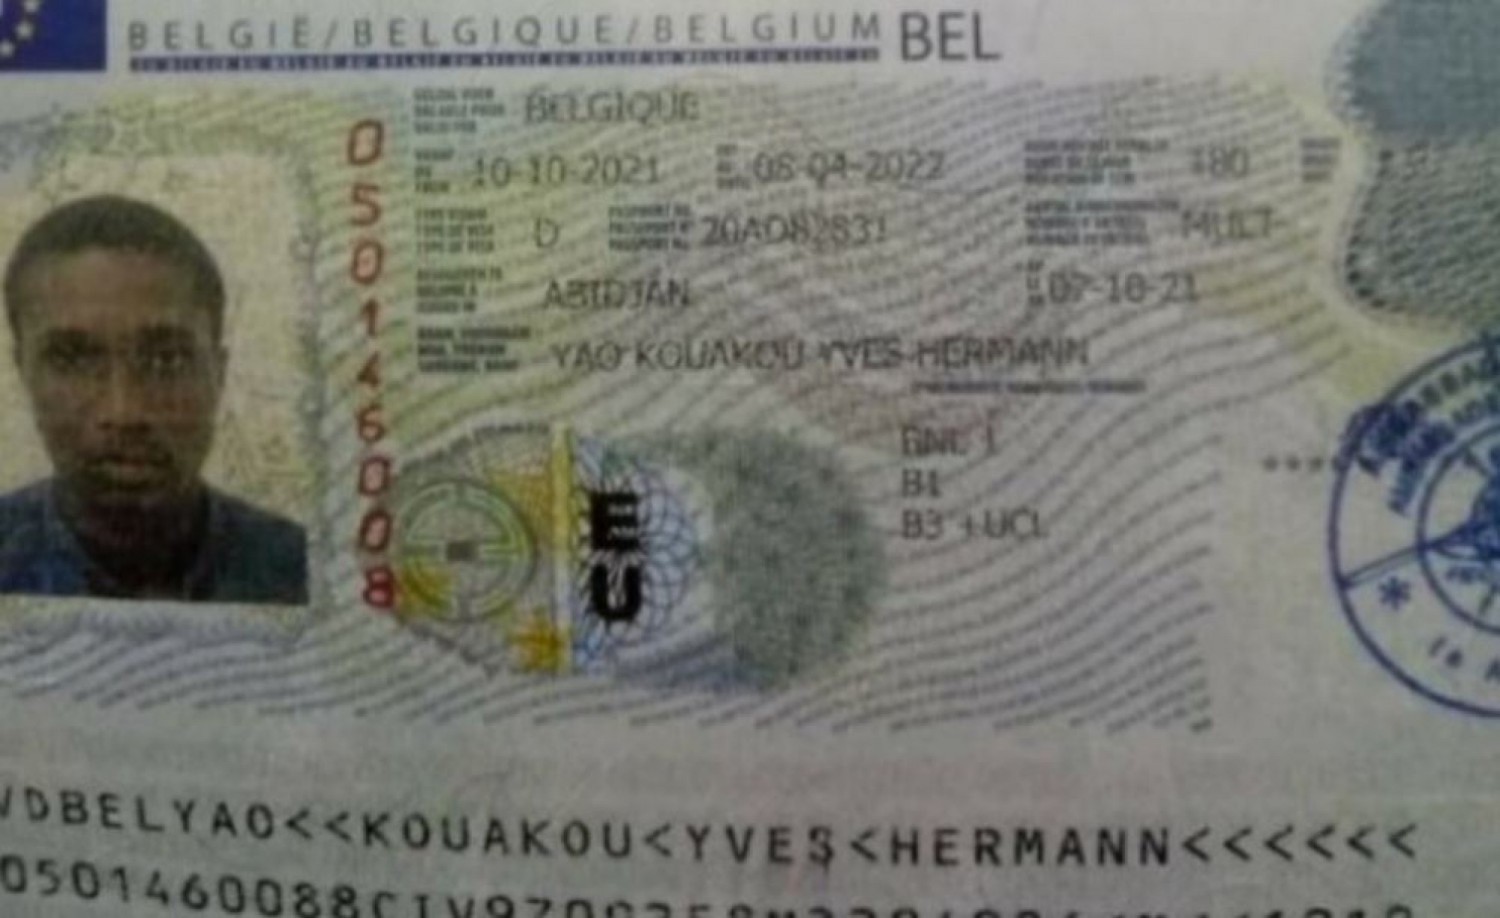 Côte d'Ivoire-Belgique : Un étudiant ivoirien écroué à l'aéroport de Bruxelles, l'Ambassade saisie